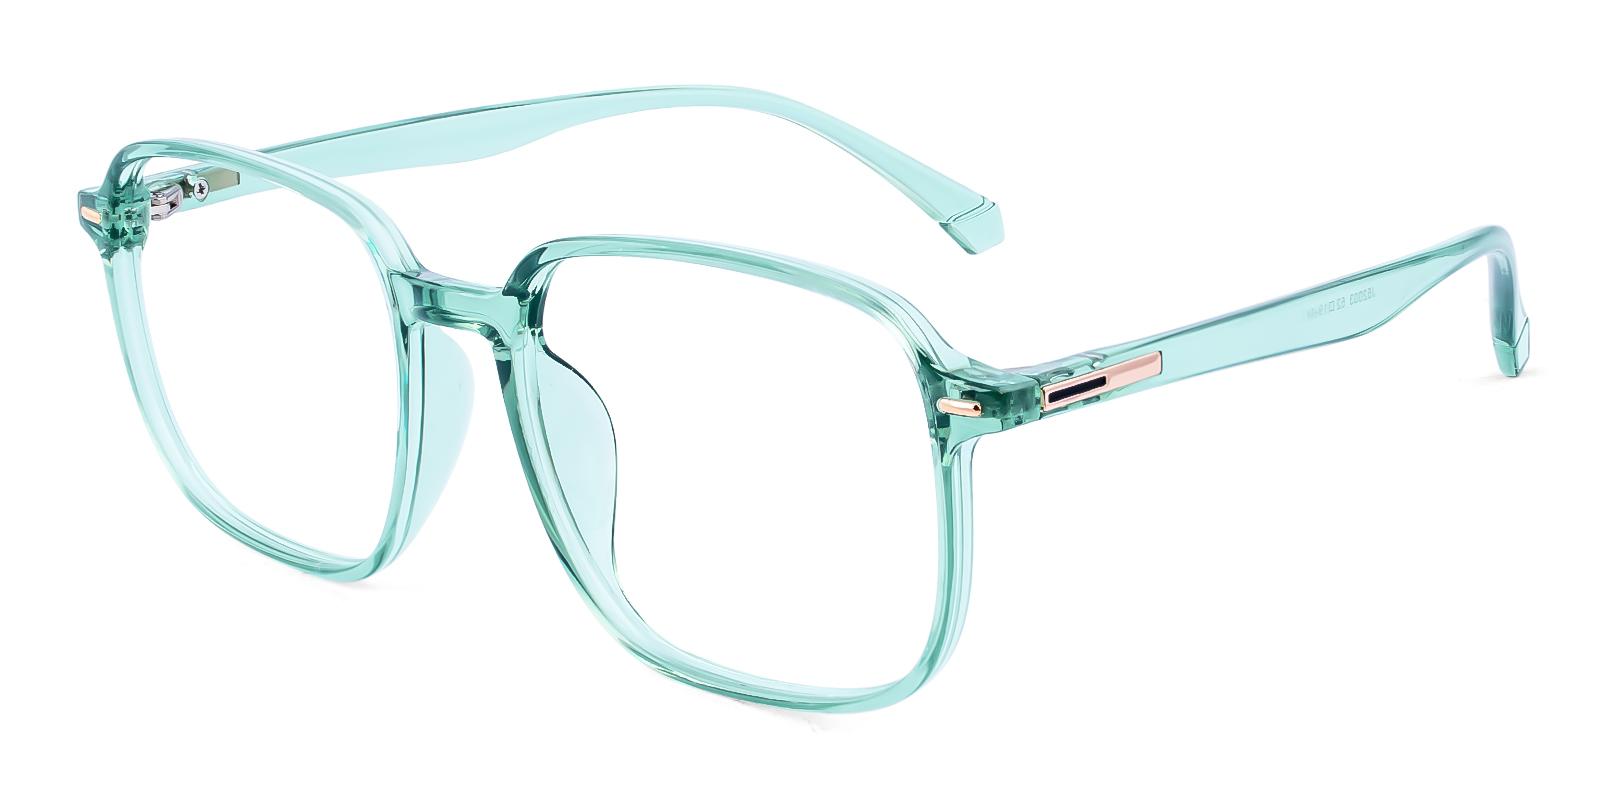 Phoarium Green Plastic Eyeglasses , UniversalBridgeFit Frames from ABBE Glasses